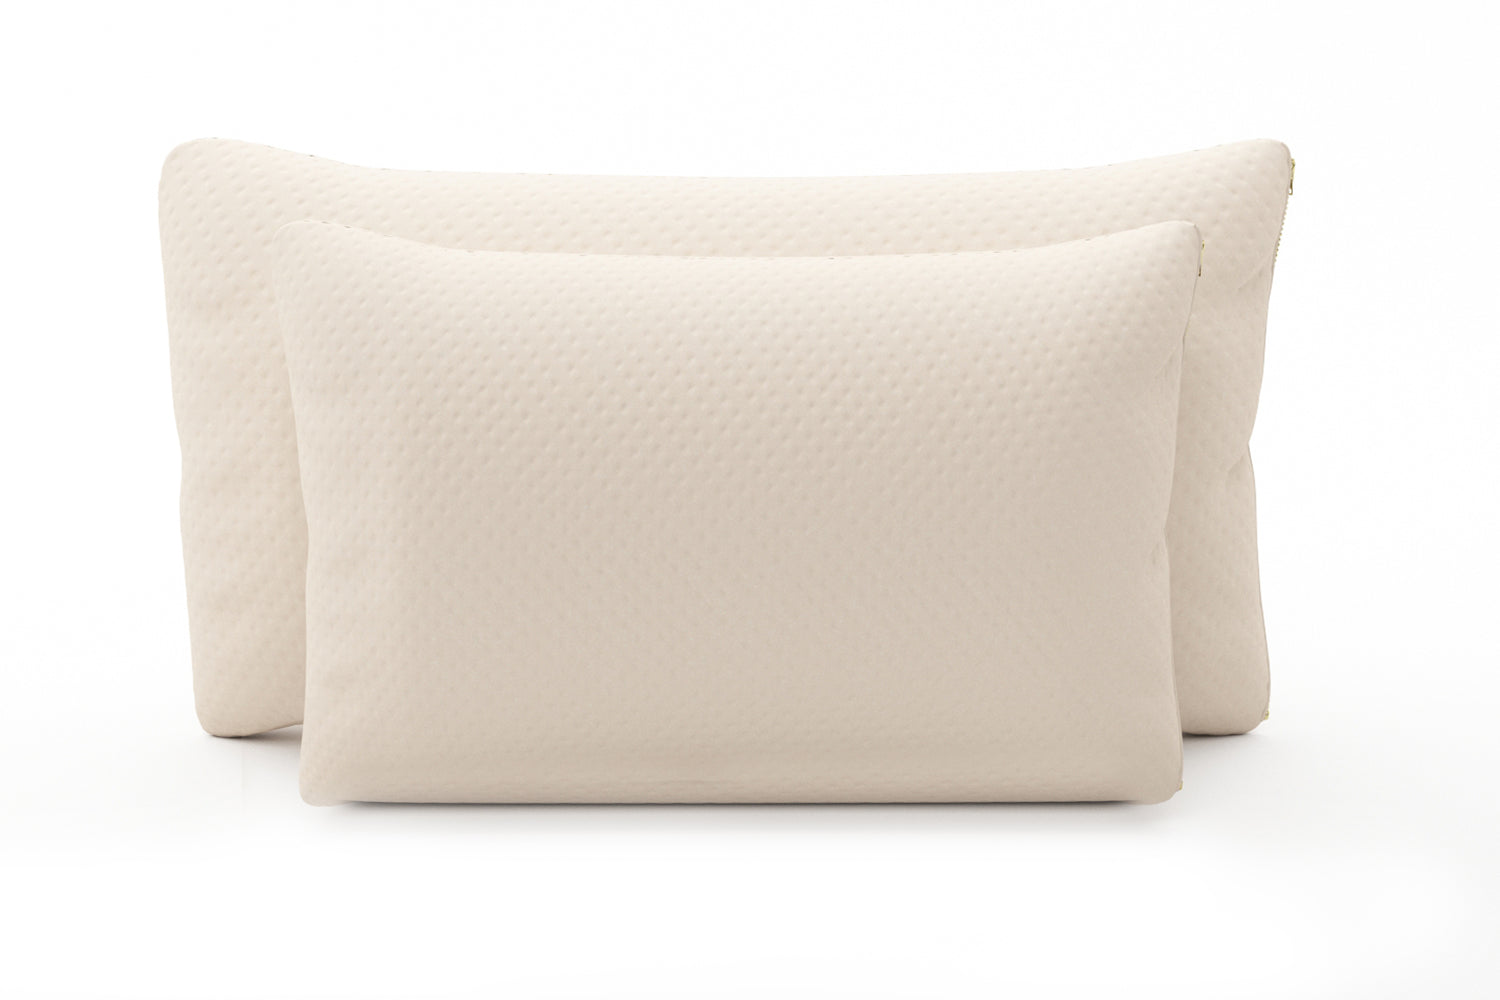 The Crush Organic Shredded Rubber Pillow